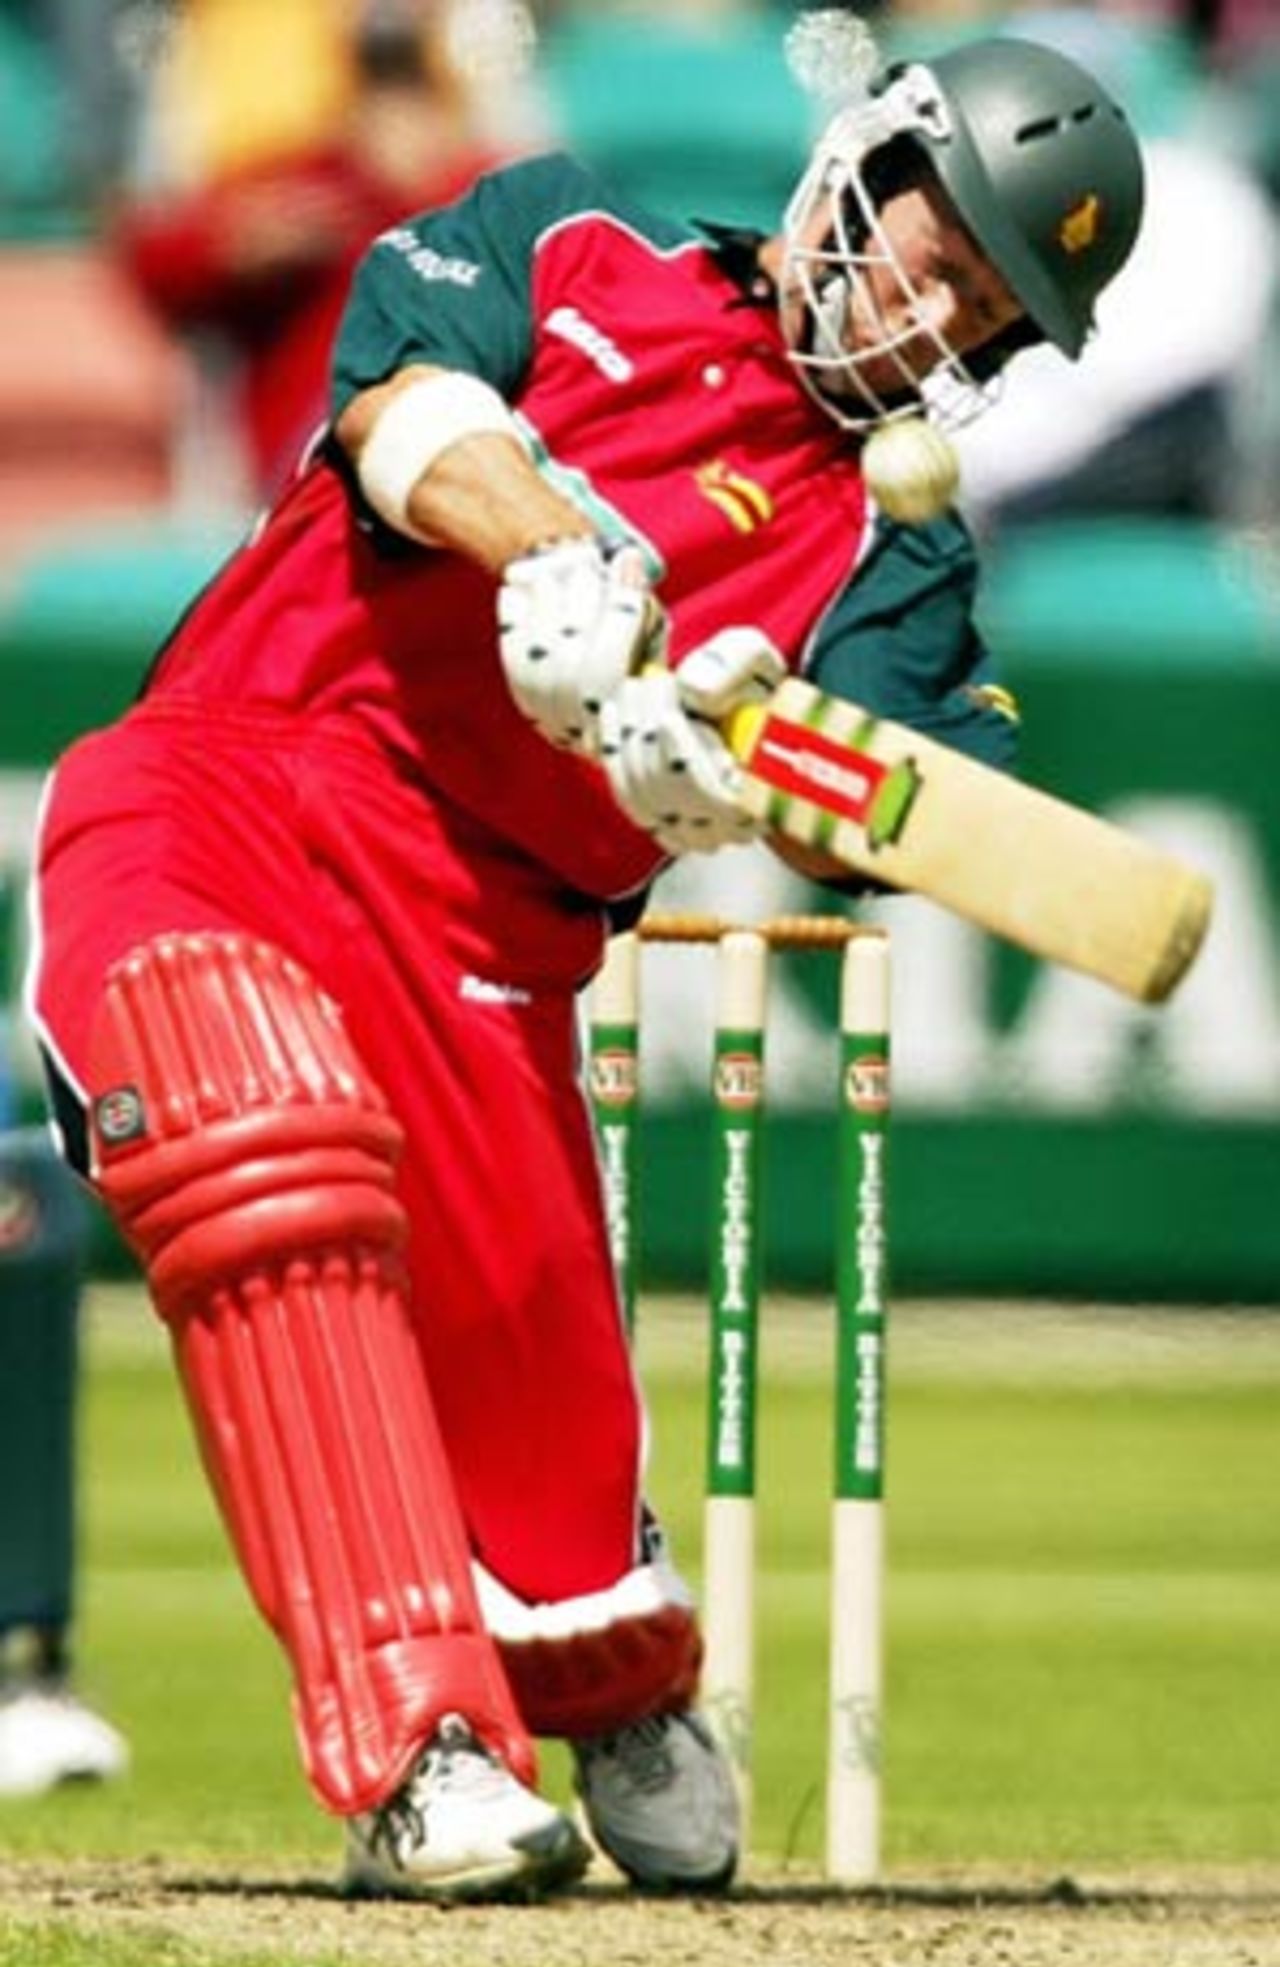 Sean Ervine's lusty hitting took Zimbabwe towards respectability, India v Zimbabwe, VB Series, 3rd ODI, Hobart, January 14, 2003